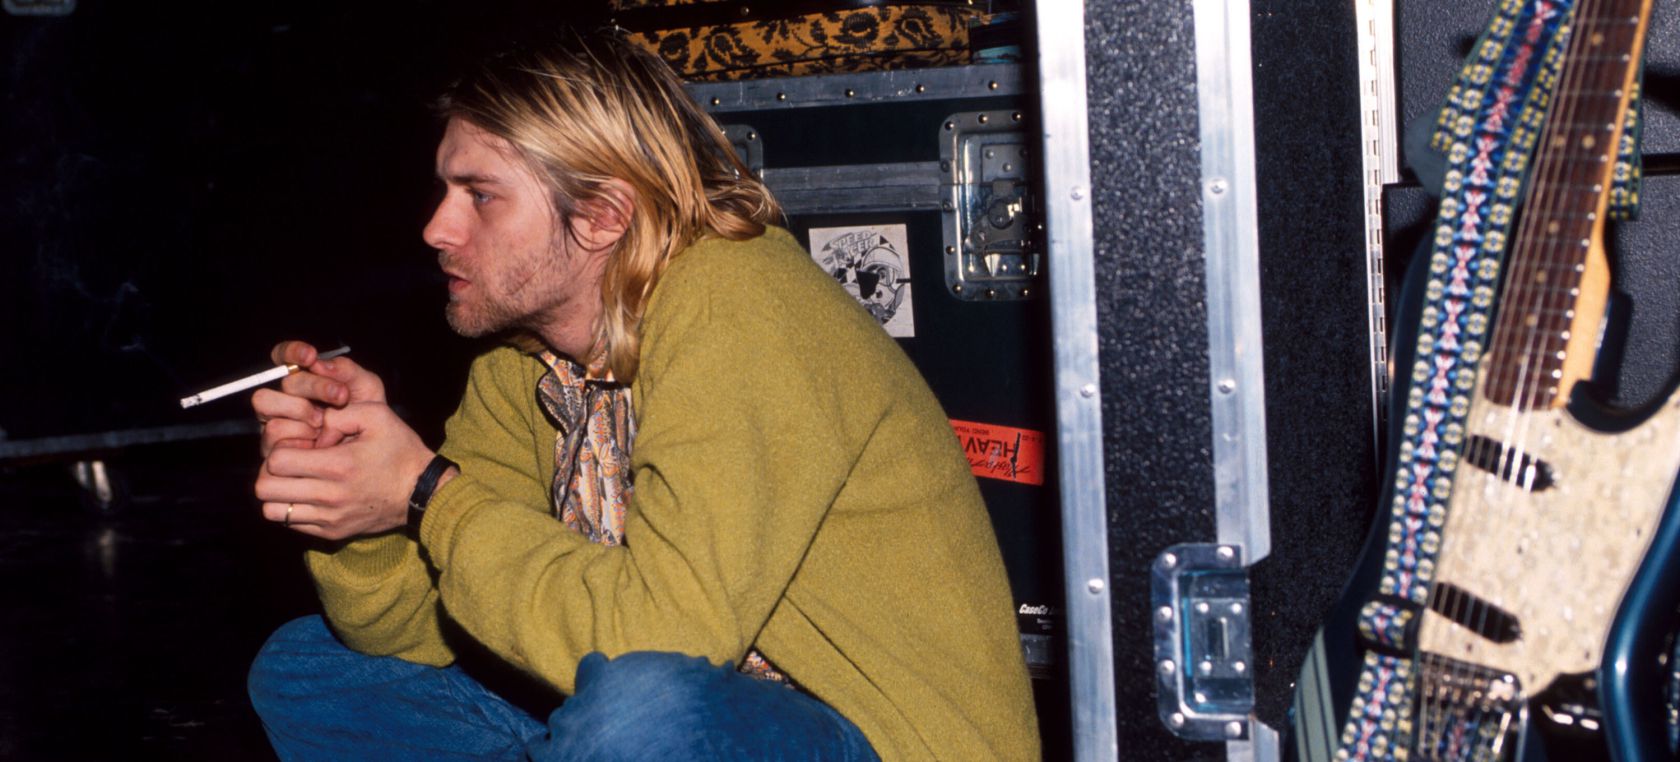 A subasta la guitarra de Kurt Cobain en el vídeo de ‘Smells Like Teen Spirit’